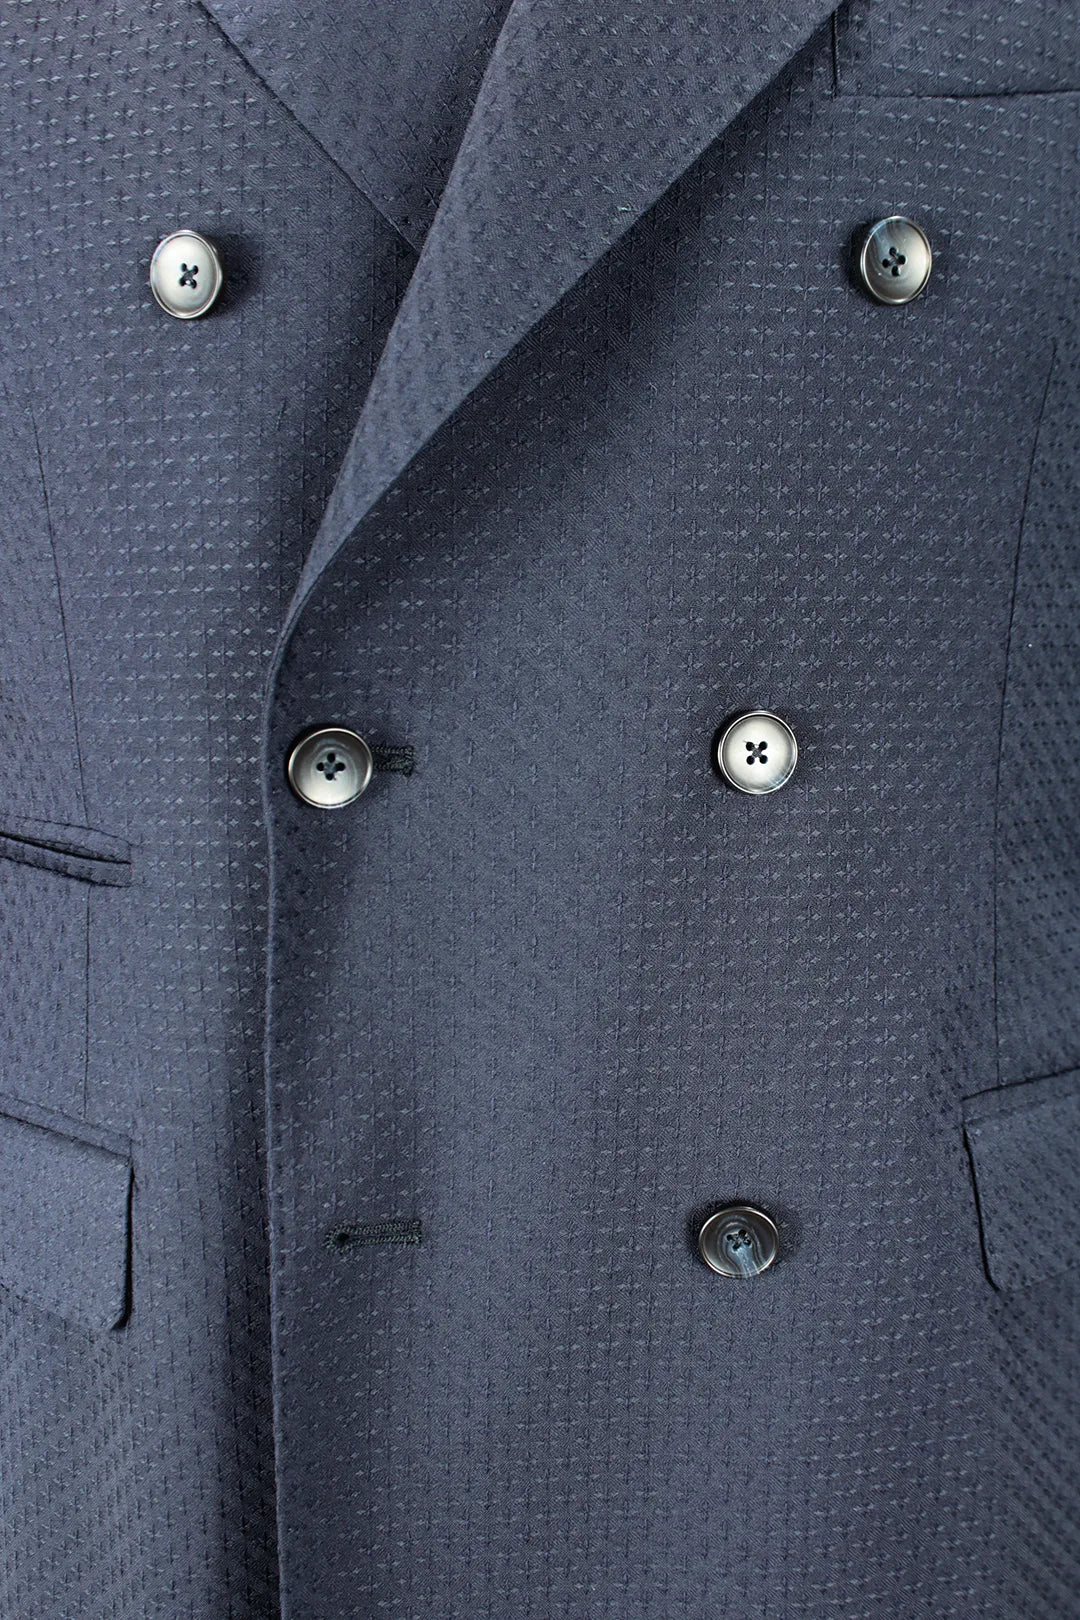 Giacca doppiopetto in lana blu operata bottoni